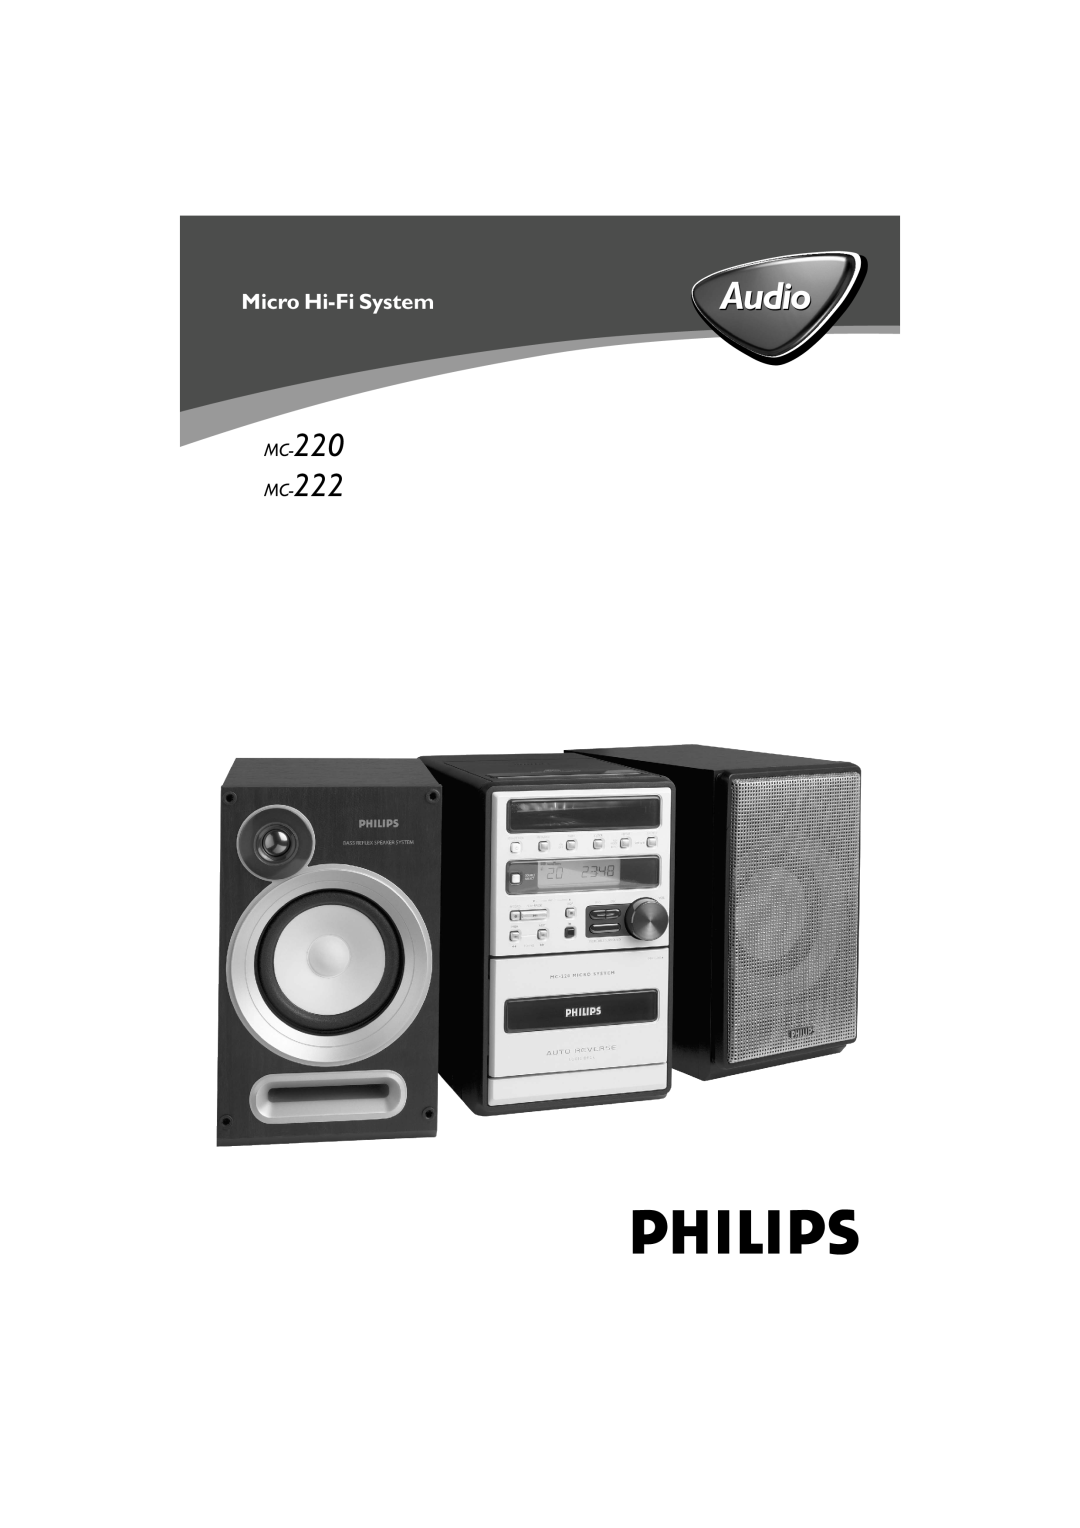 Philips MG220, MG222 manual Audio, Micro Hi-FiSystem, MC-220 MC-222 